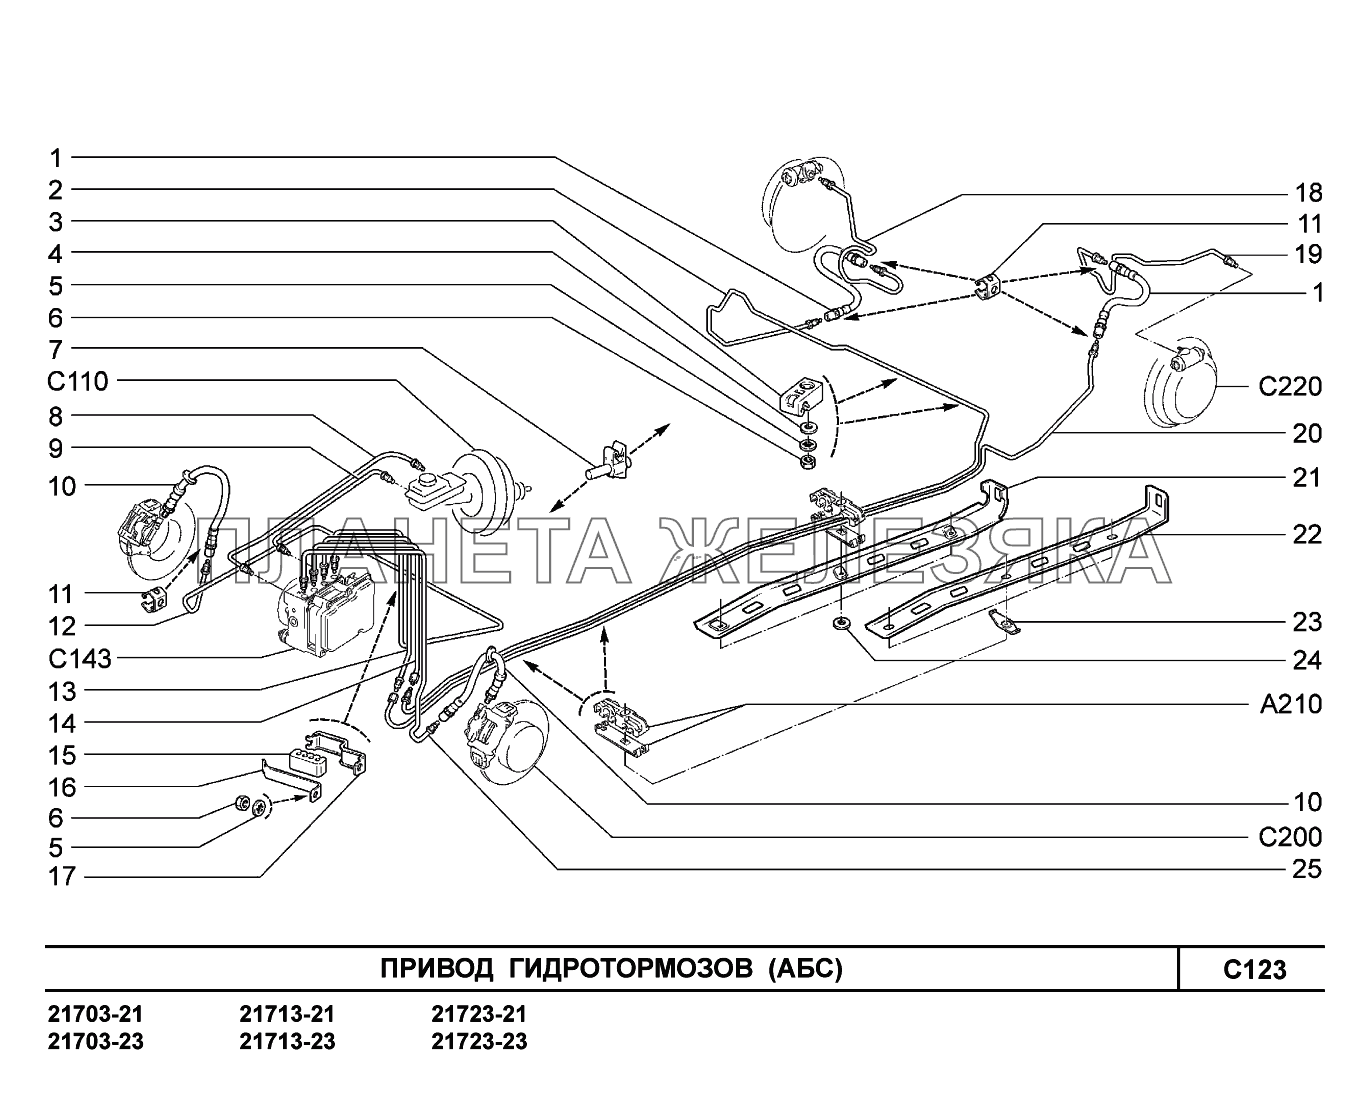 C123. Привод гидротормозов ВАЗ-2170 